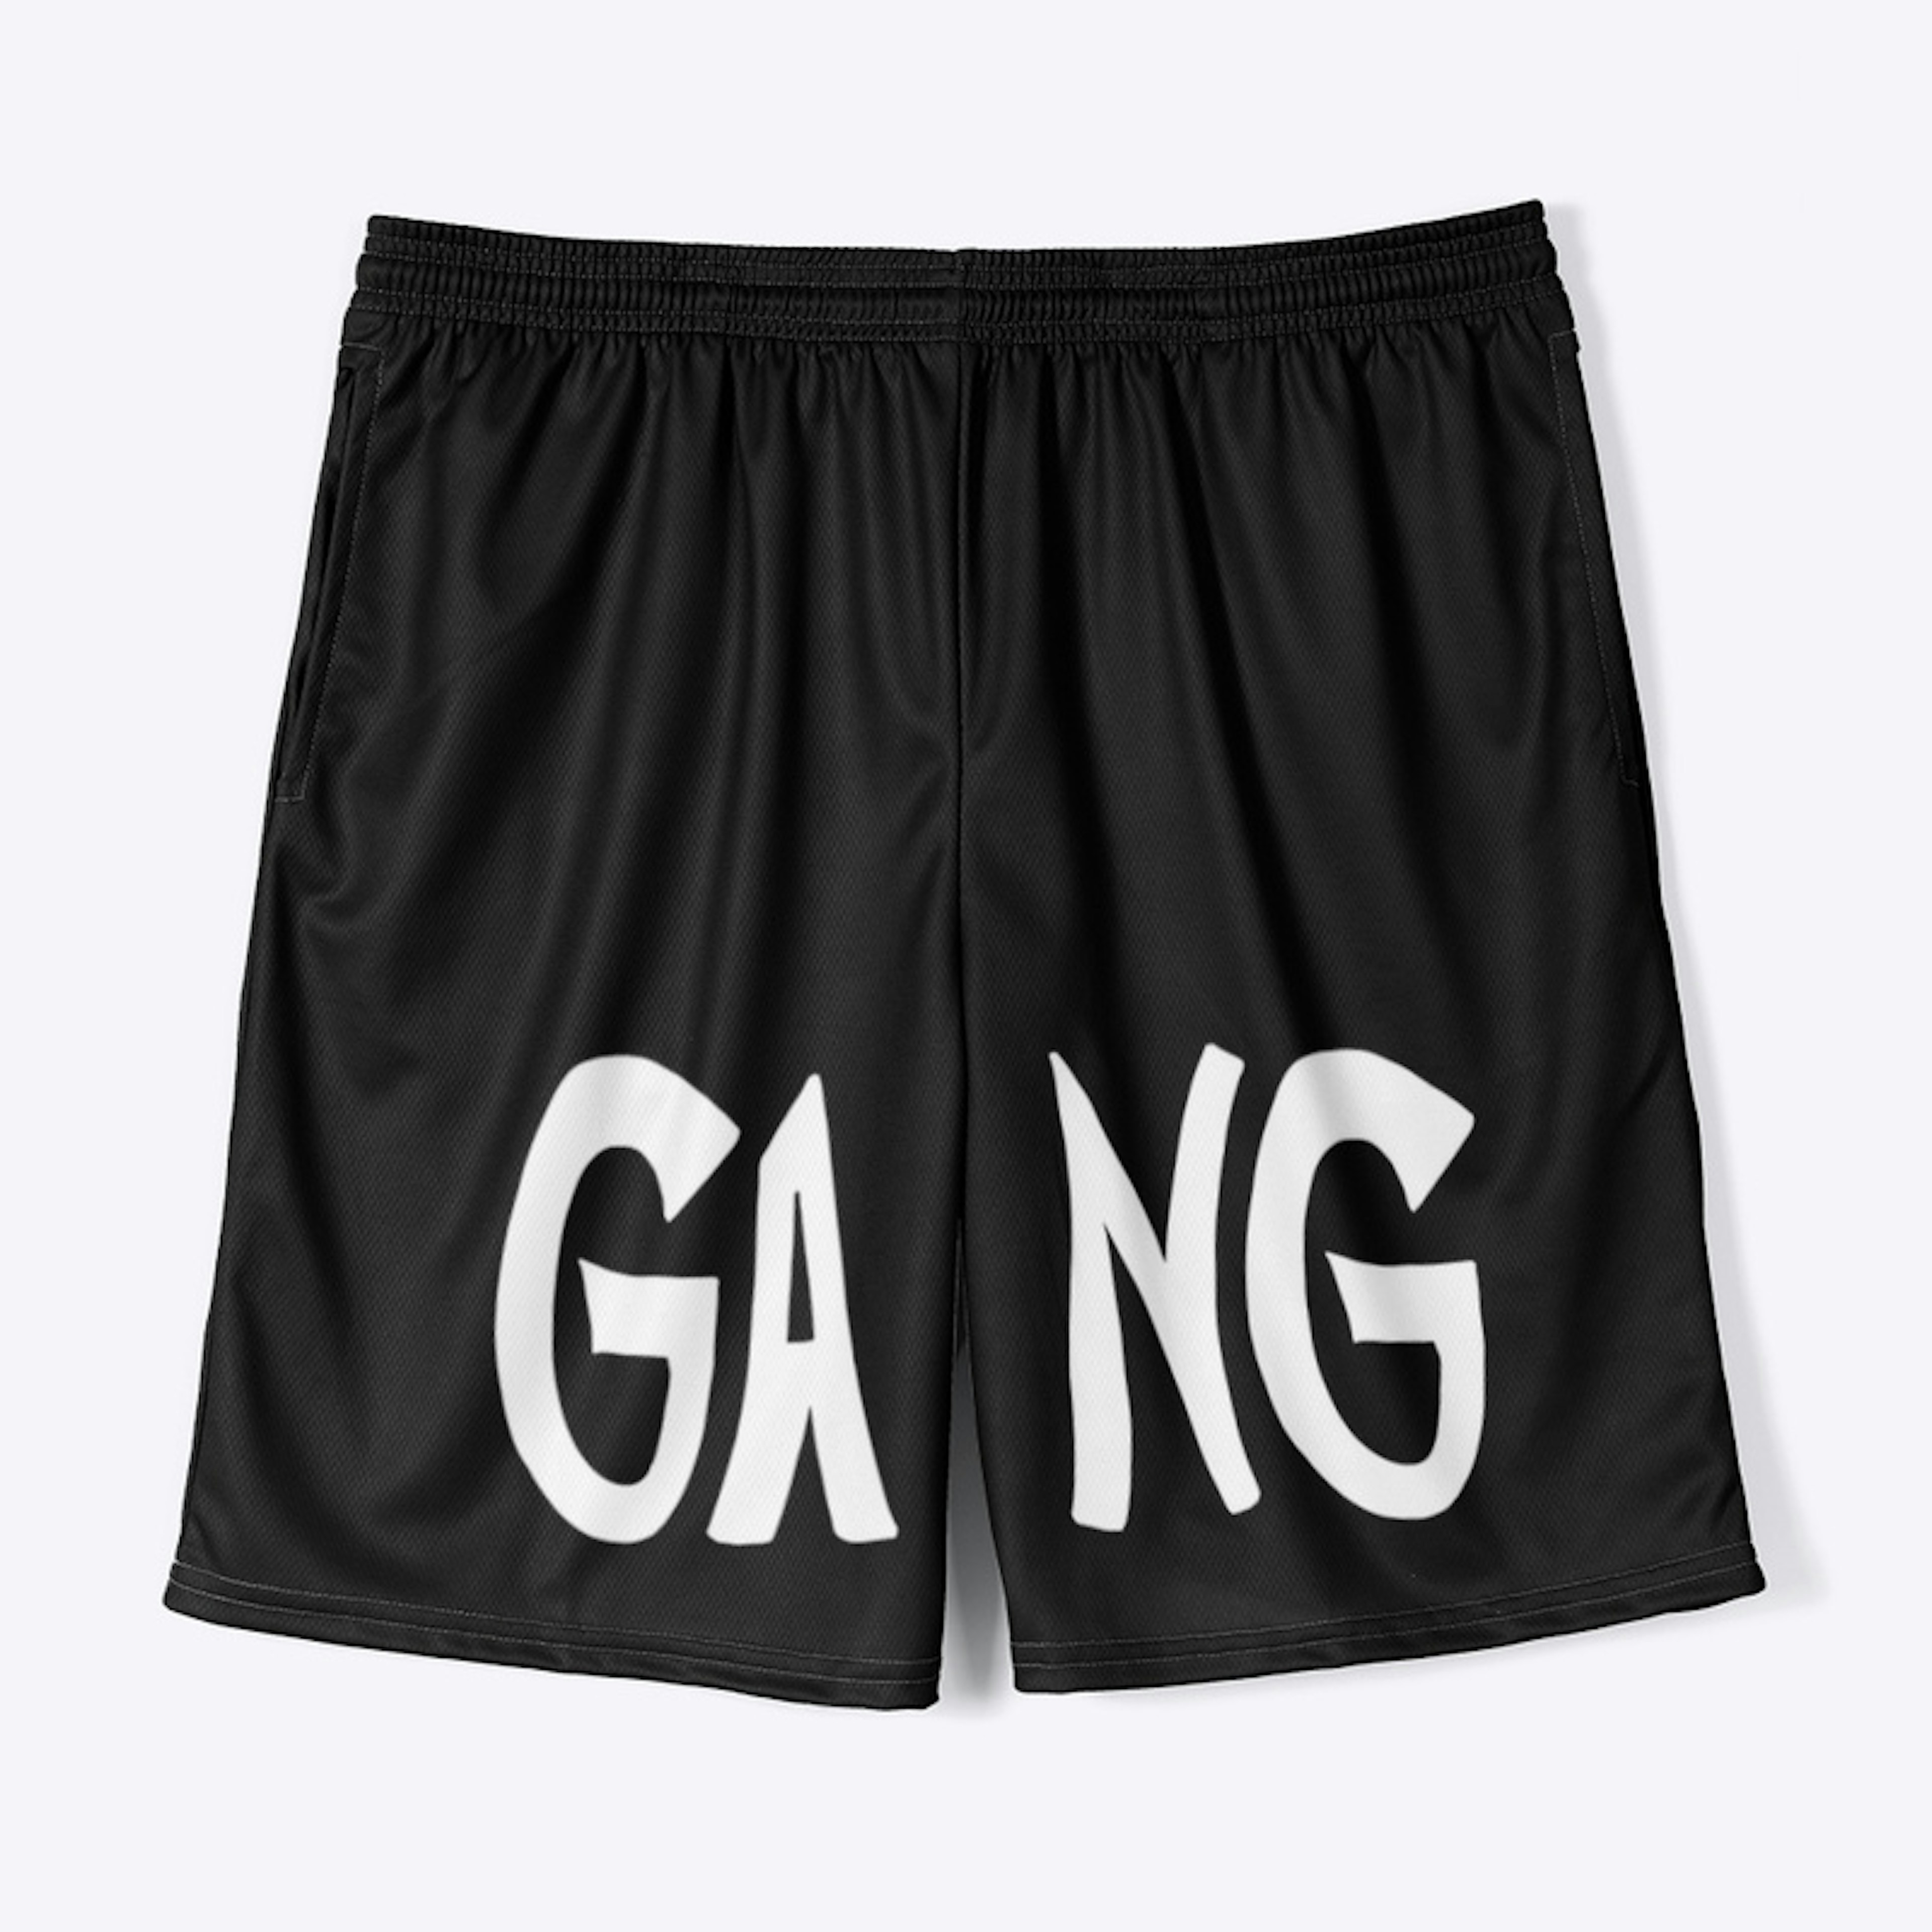 Gang shorts